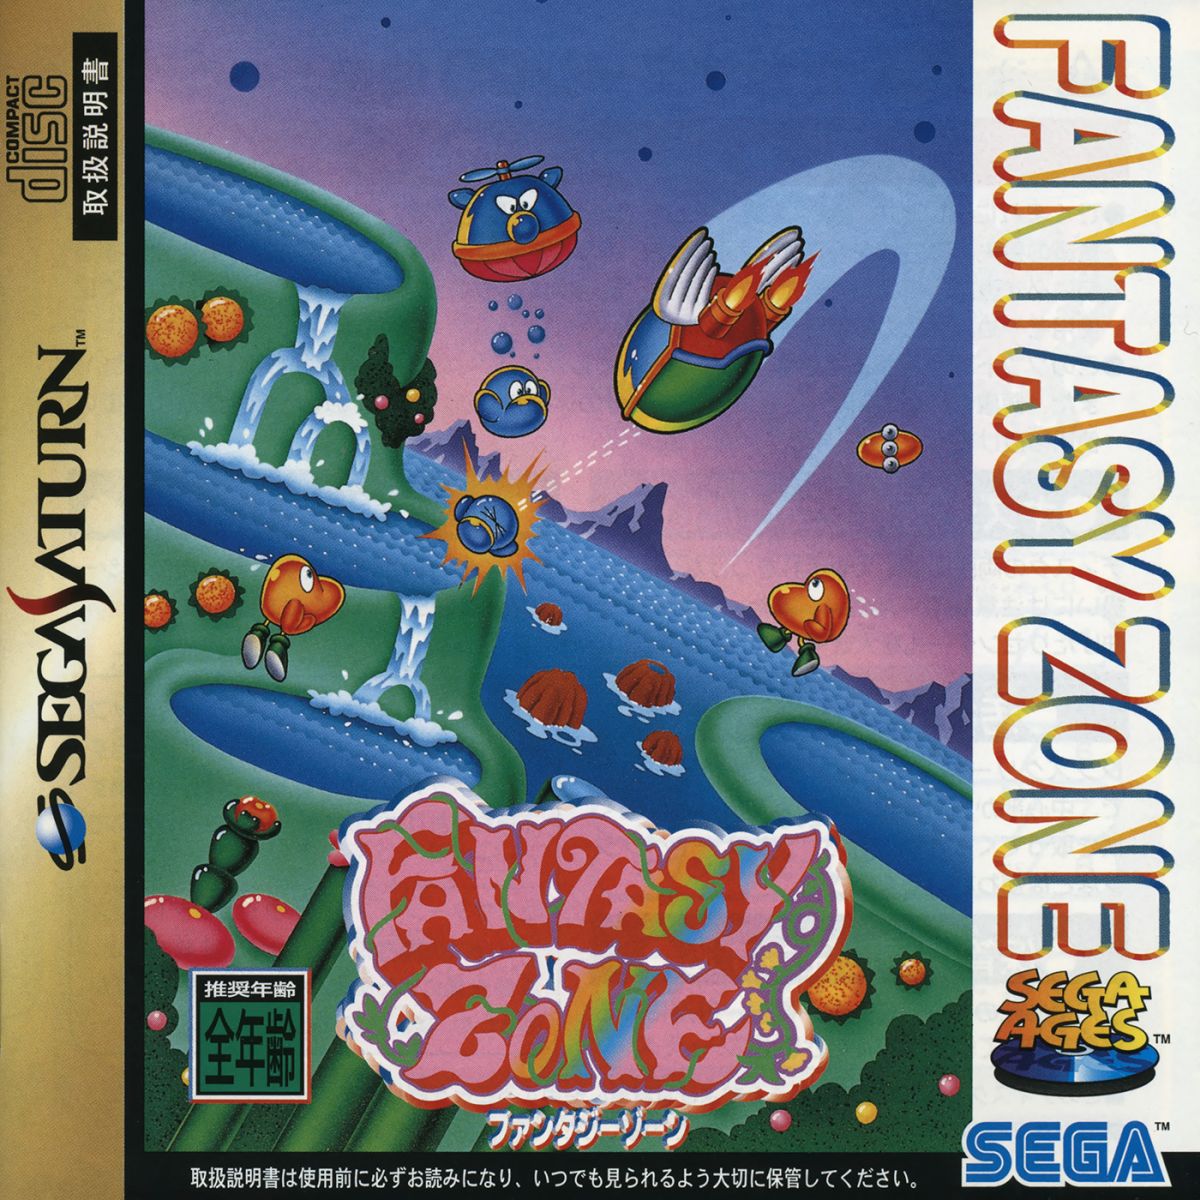 Capa do jogo Sega Ages Fantasy Zone